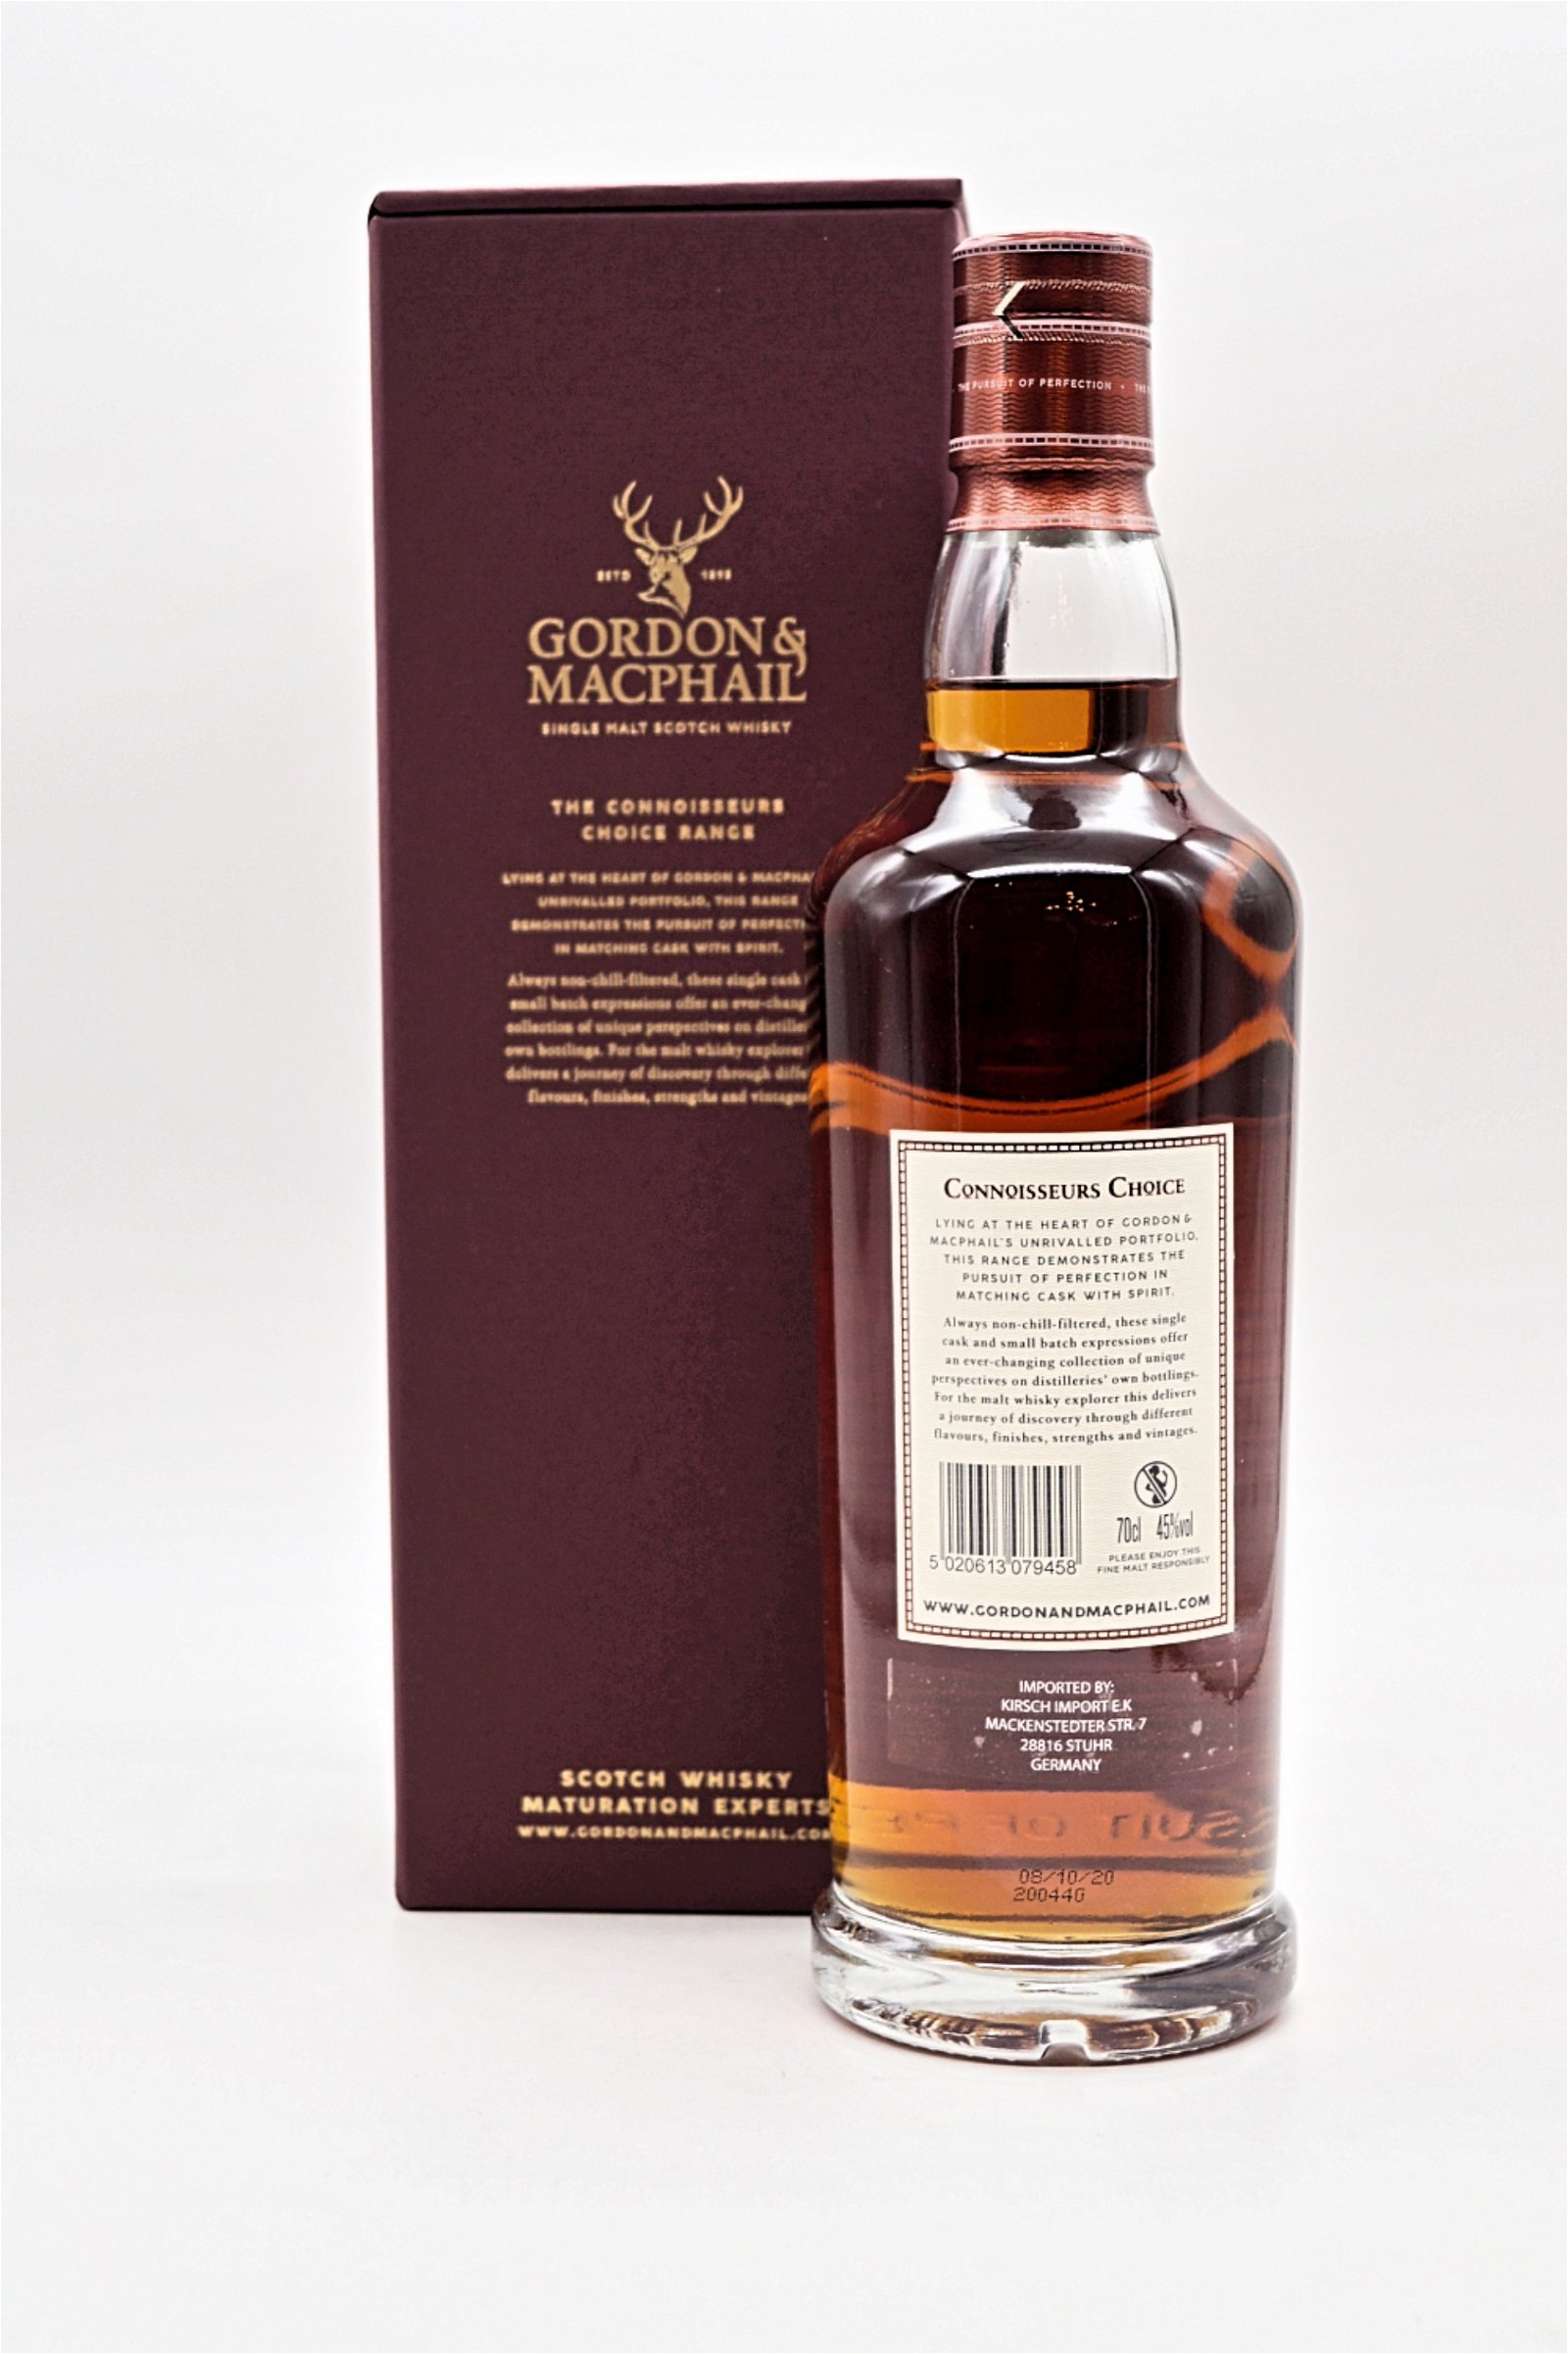 Gordon & Macphail Connoisseurs Choice Ledaig Tobermory Distillery 2008/2020 Single Malt Scotch Whisky